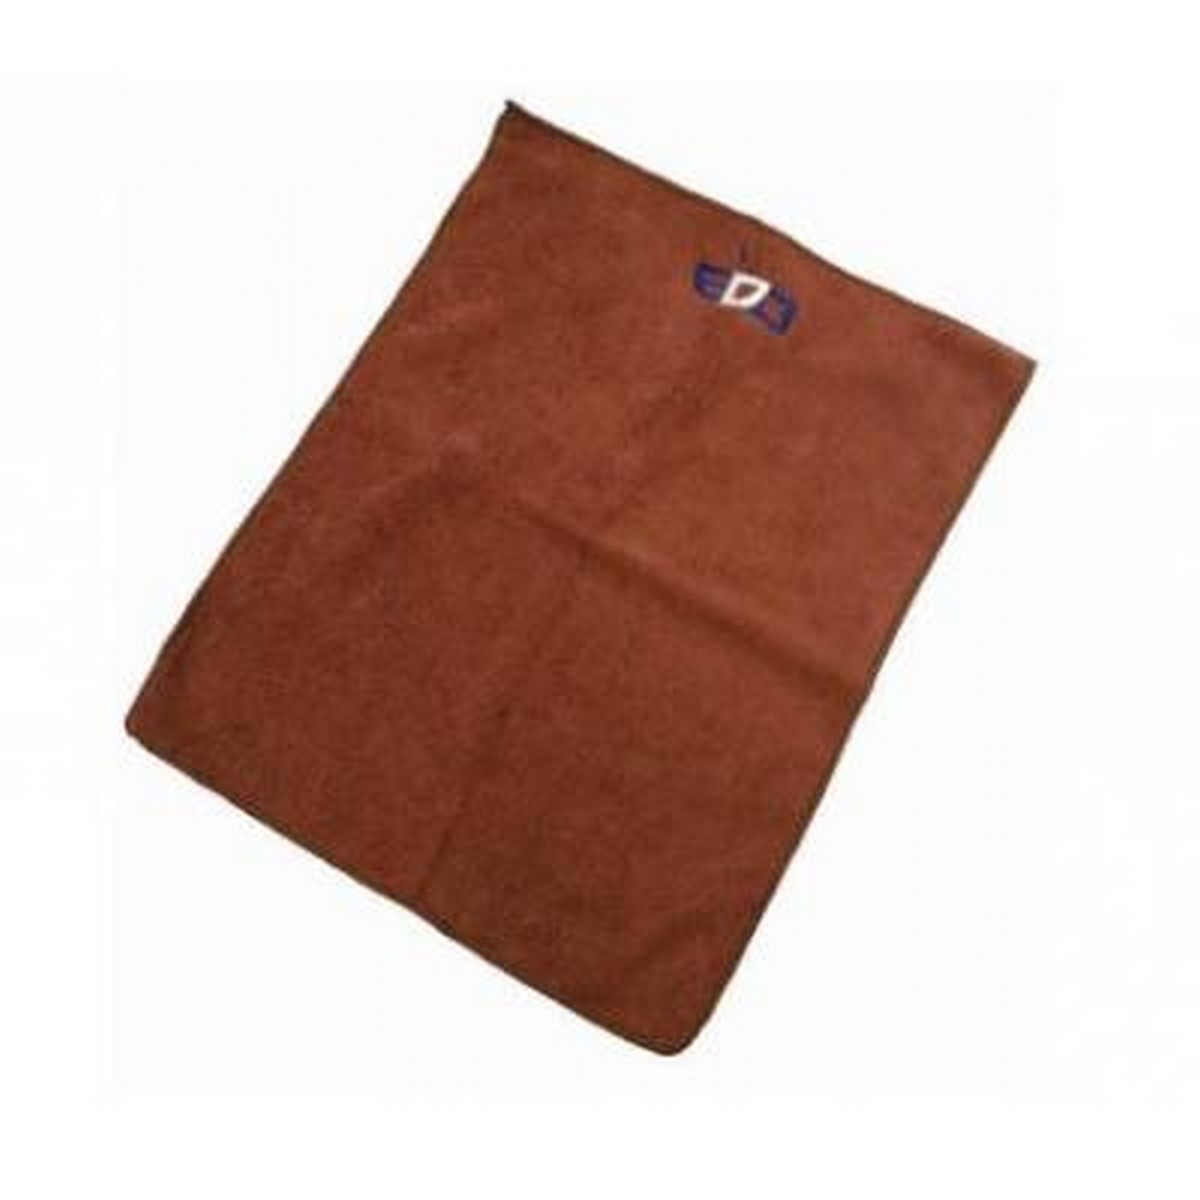 Acquista online Micro fiber cloth Brown